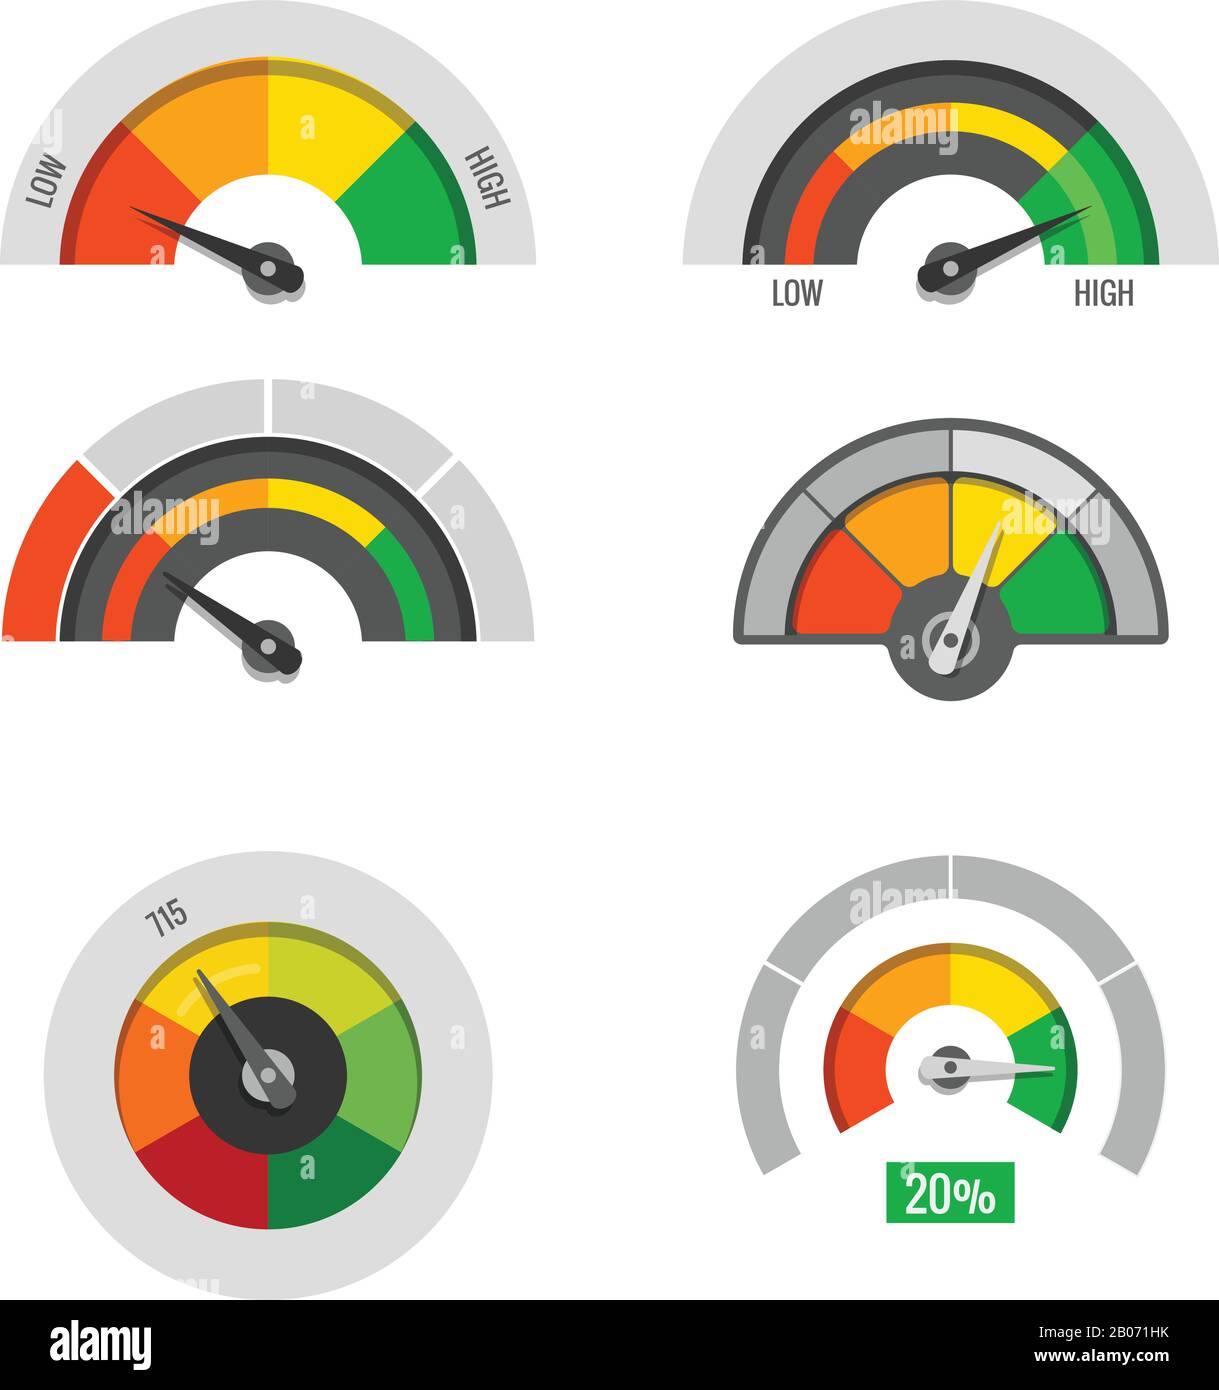 Indicatori del tachimetro indicatori dei livelli di misurazione bassi, moderati e alti stock vettoriale. Illustrazione del livello e della valutazione Illustrazione Vettoriale